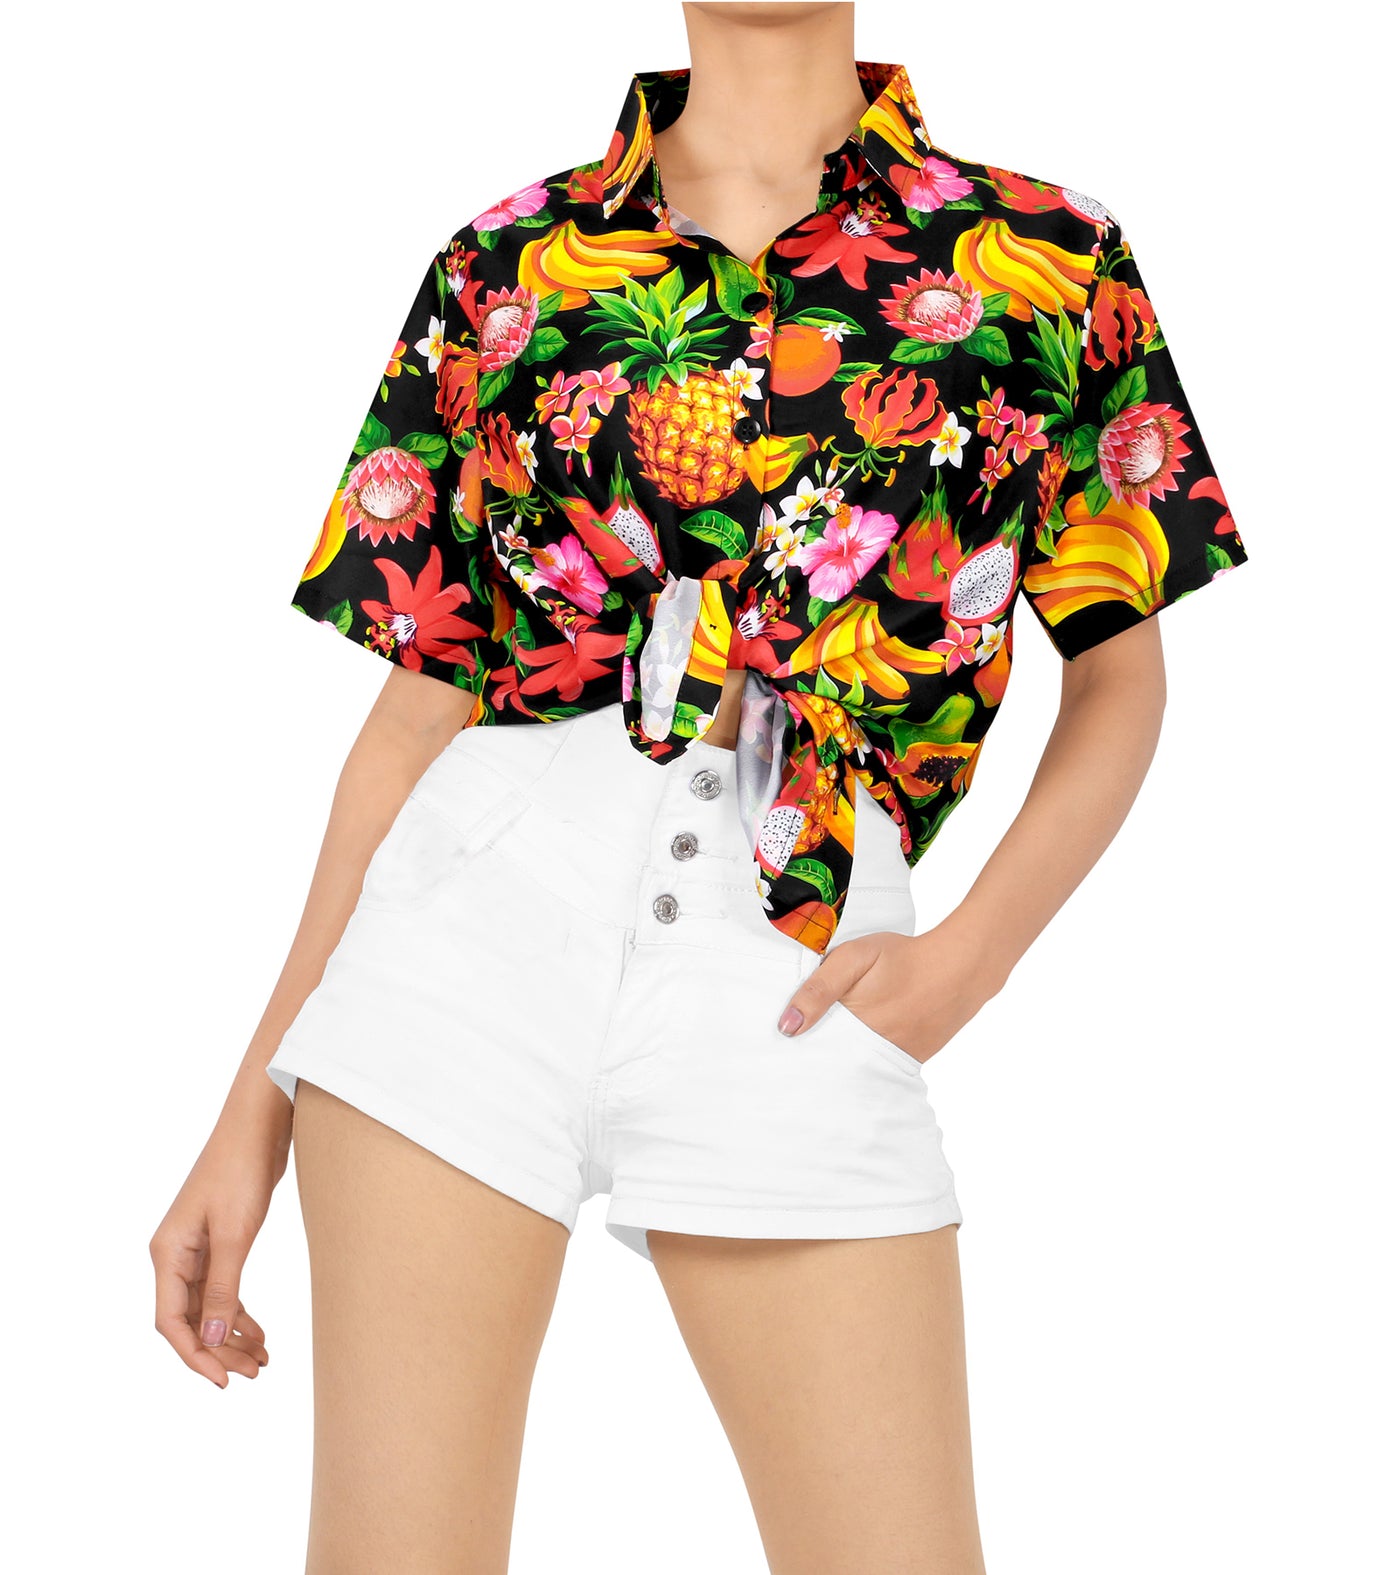 Fruity Fun Hawaiian shirt for women